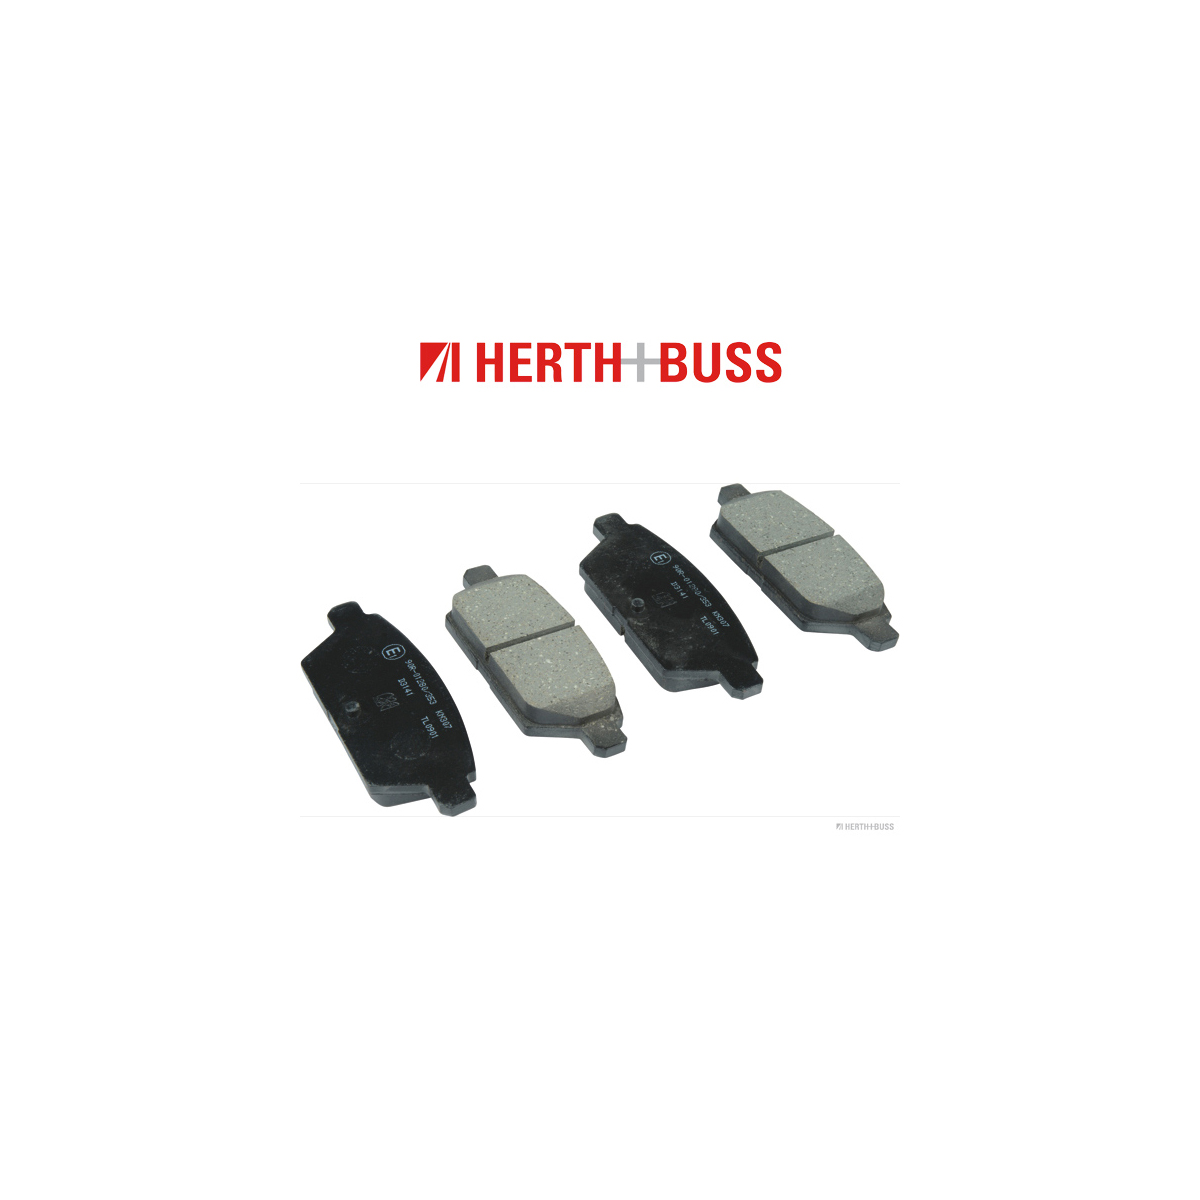 HERTH+BUSS JAKOPARTS Bremsscheiben + Bremsbeläge MAZDA 6 (GG GY) 2.3 / MPS Turbo hinten